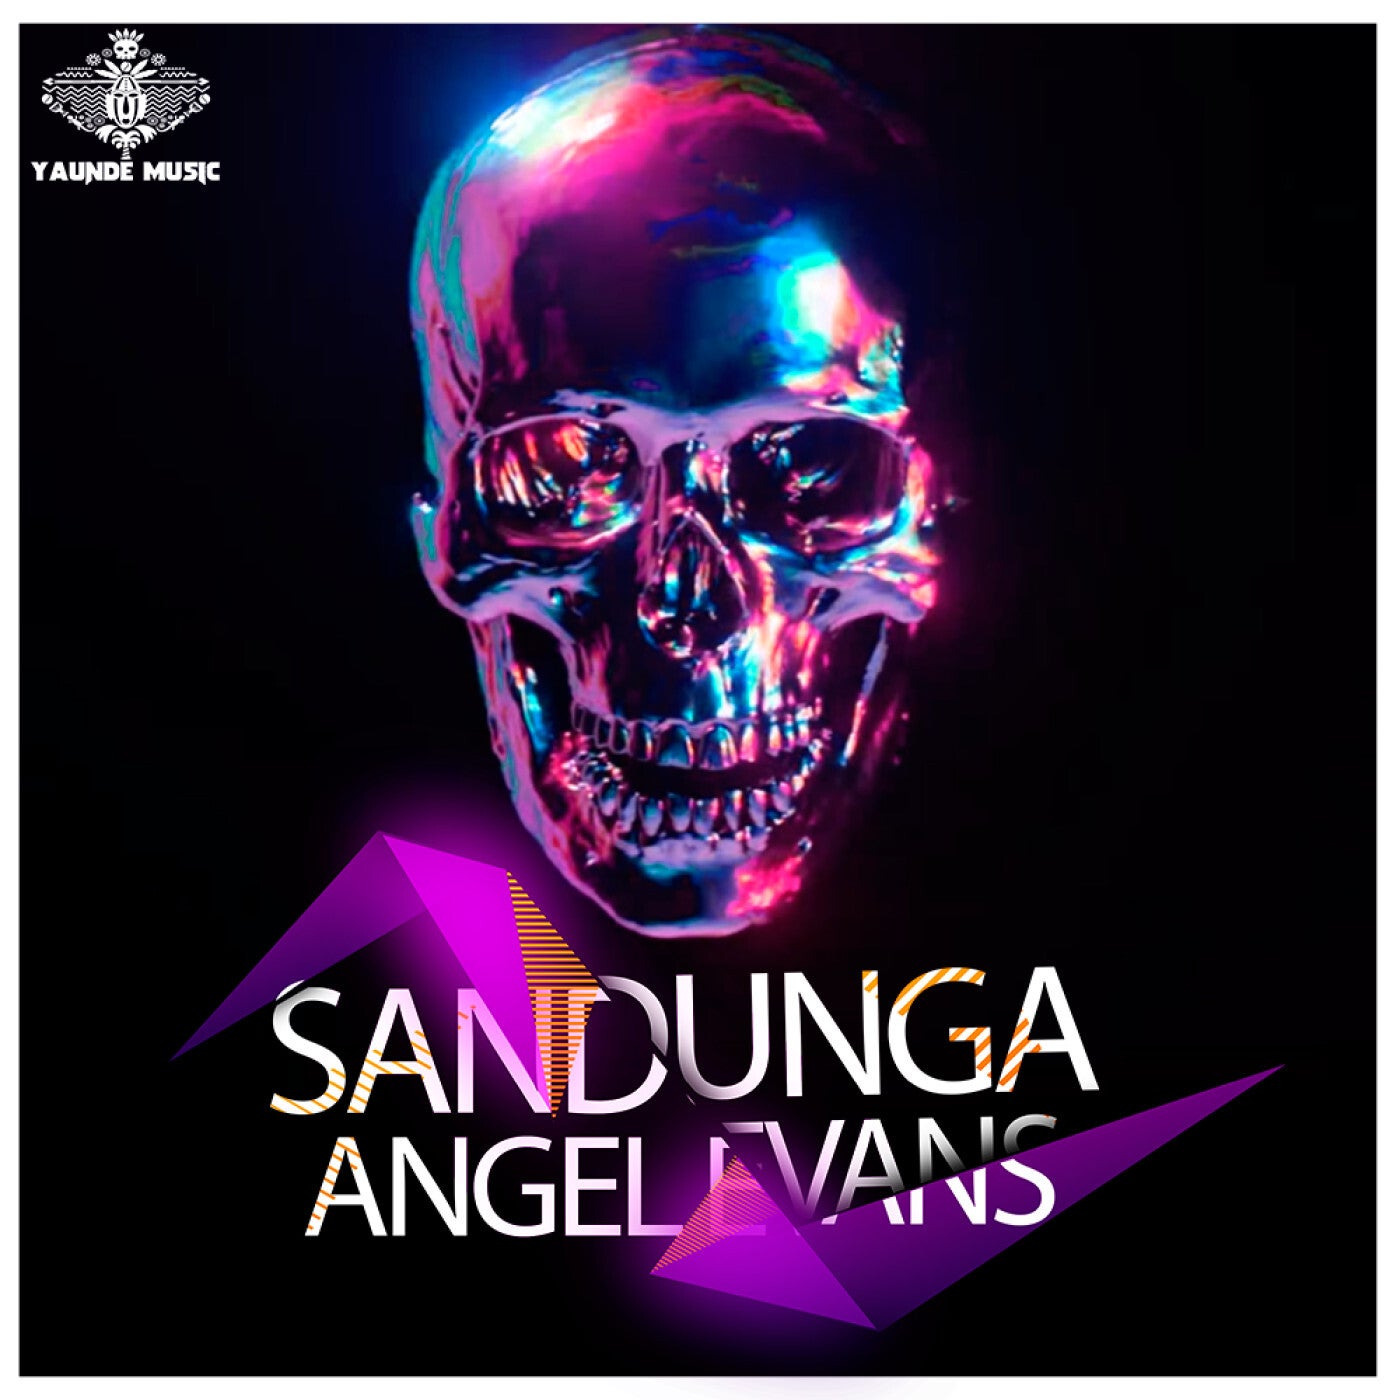 image cover: Angel Evans - Sandunga on Yaunde Music